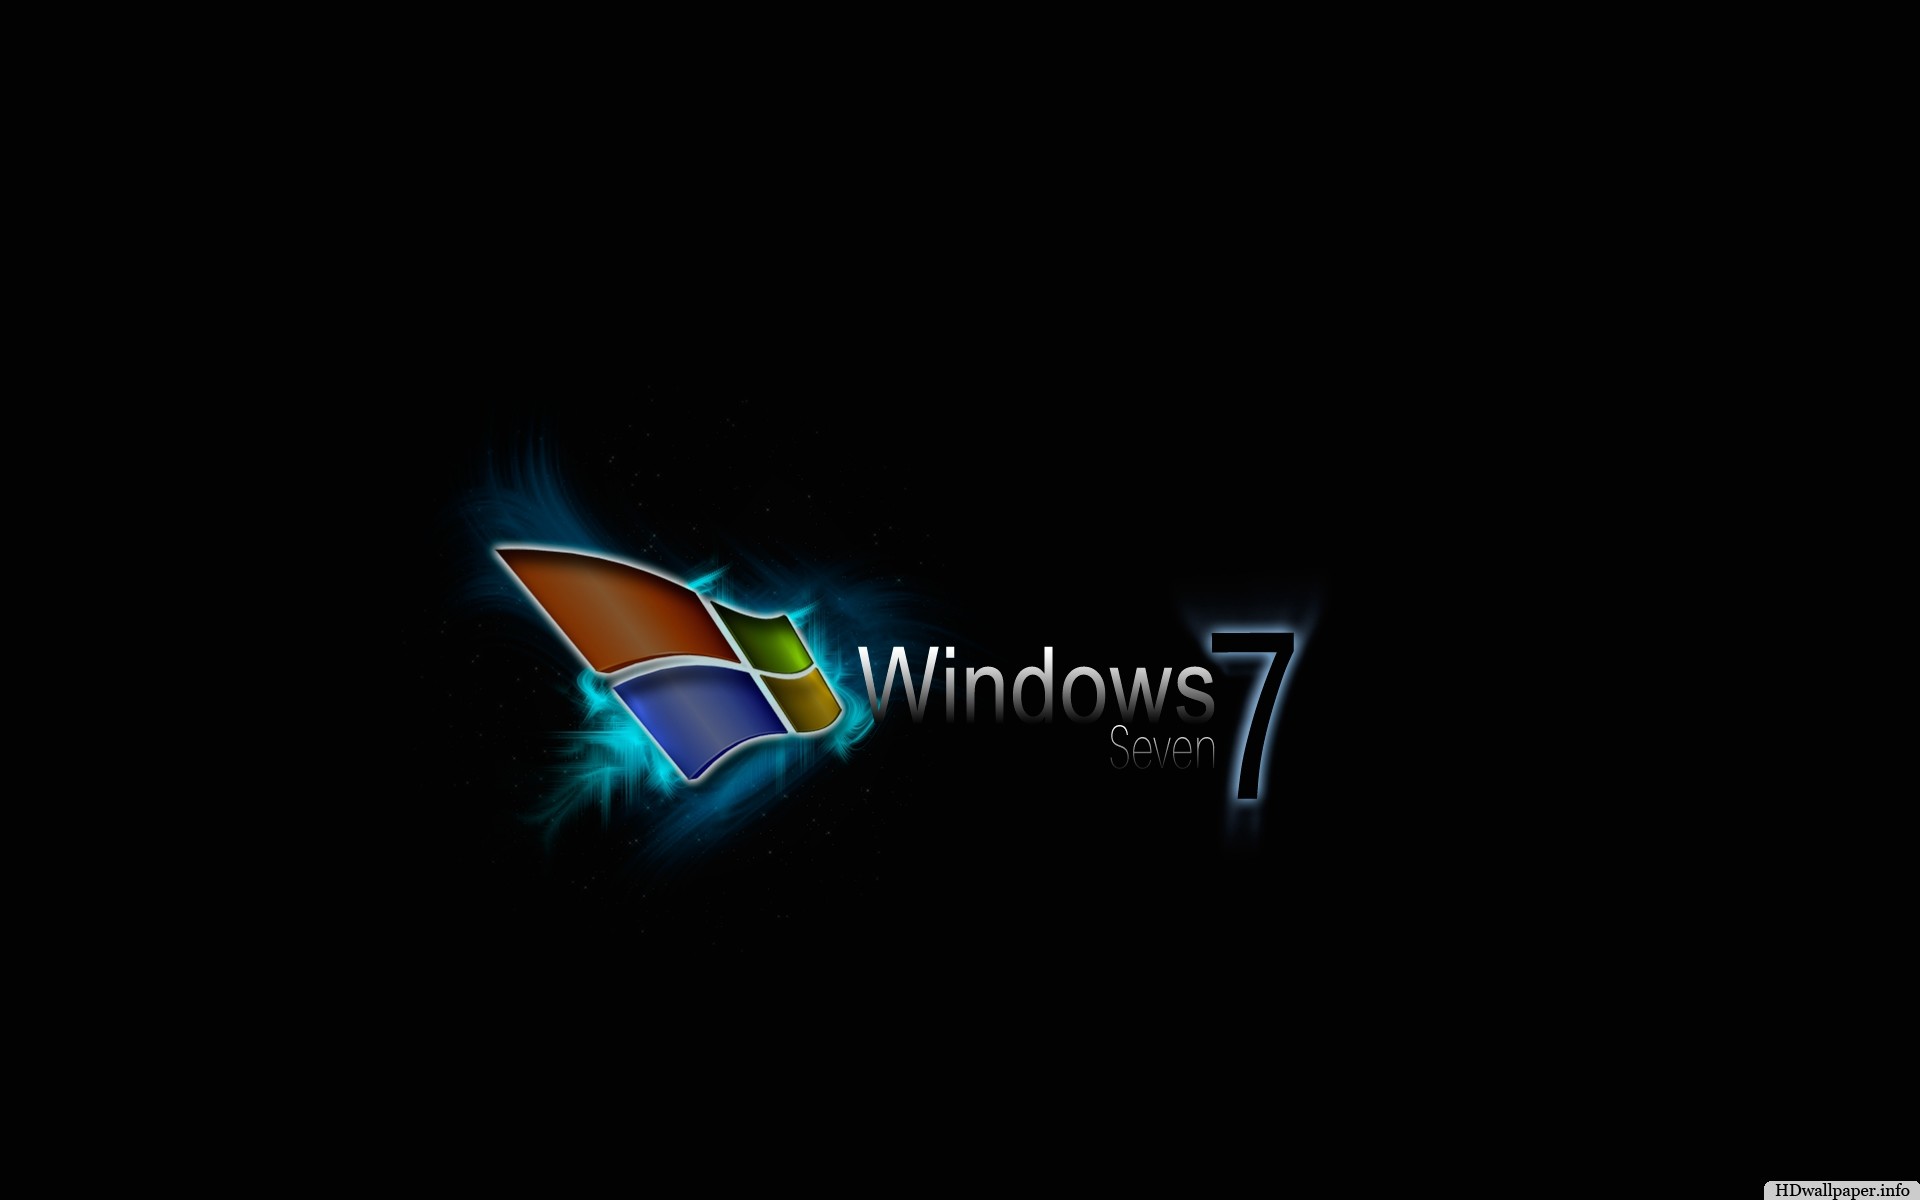 1920x1200 Hd Wallpaper For Windows 7 - http://hdwallpaper.info/hd-